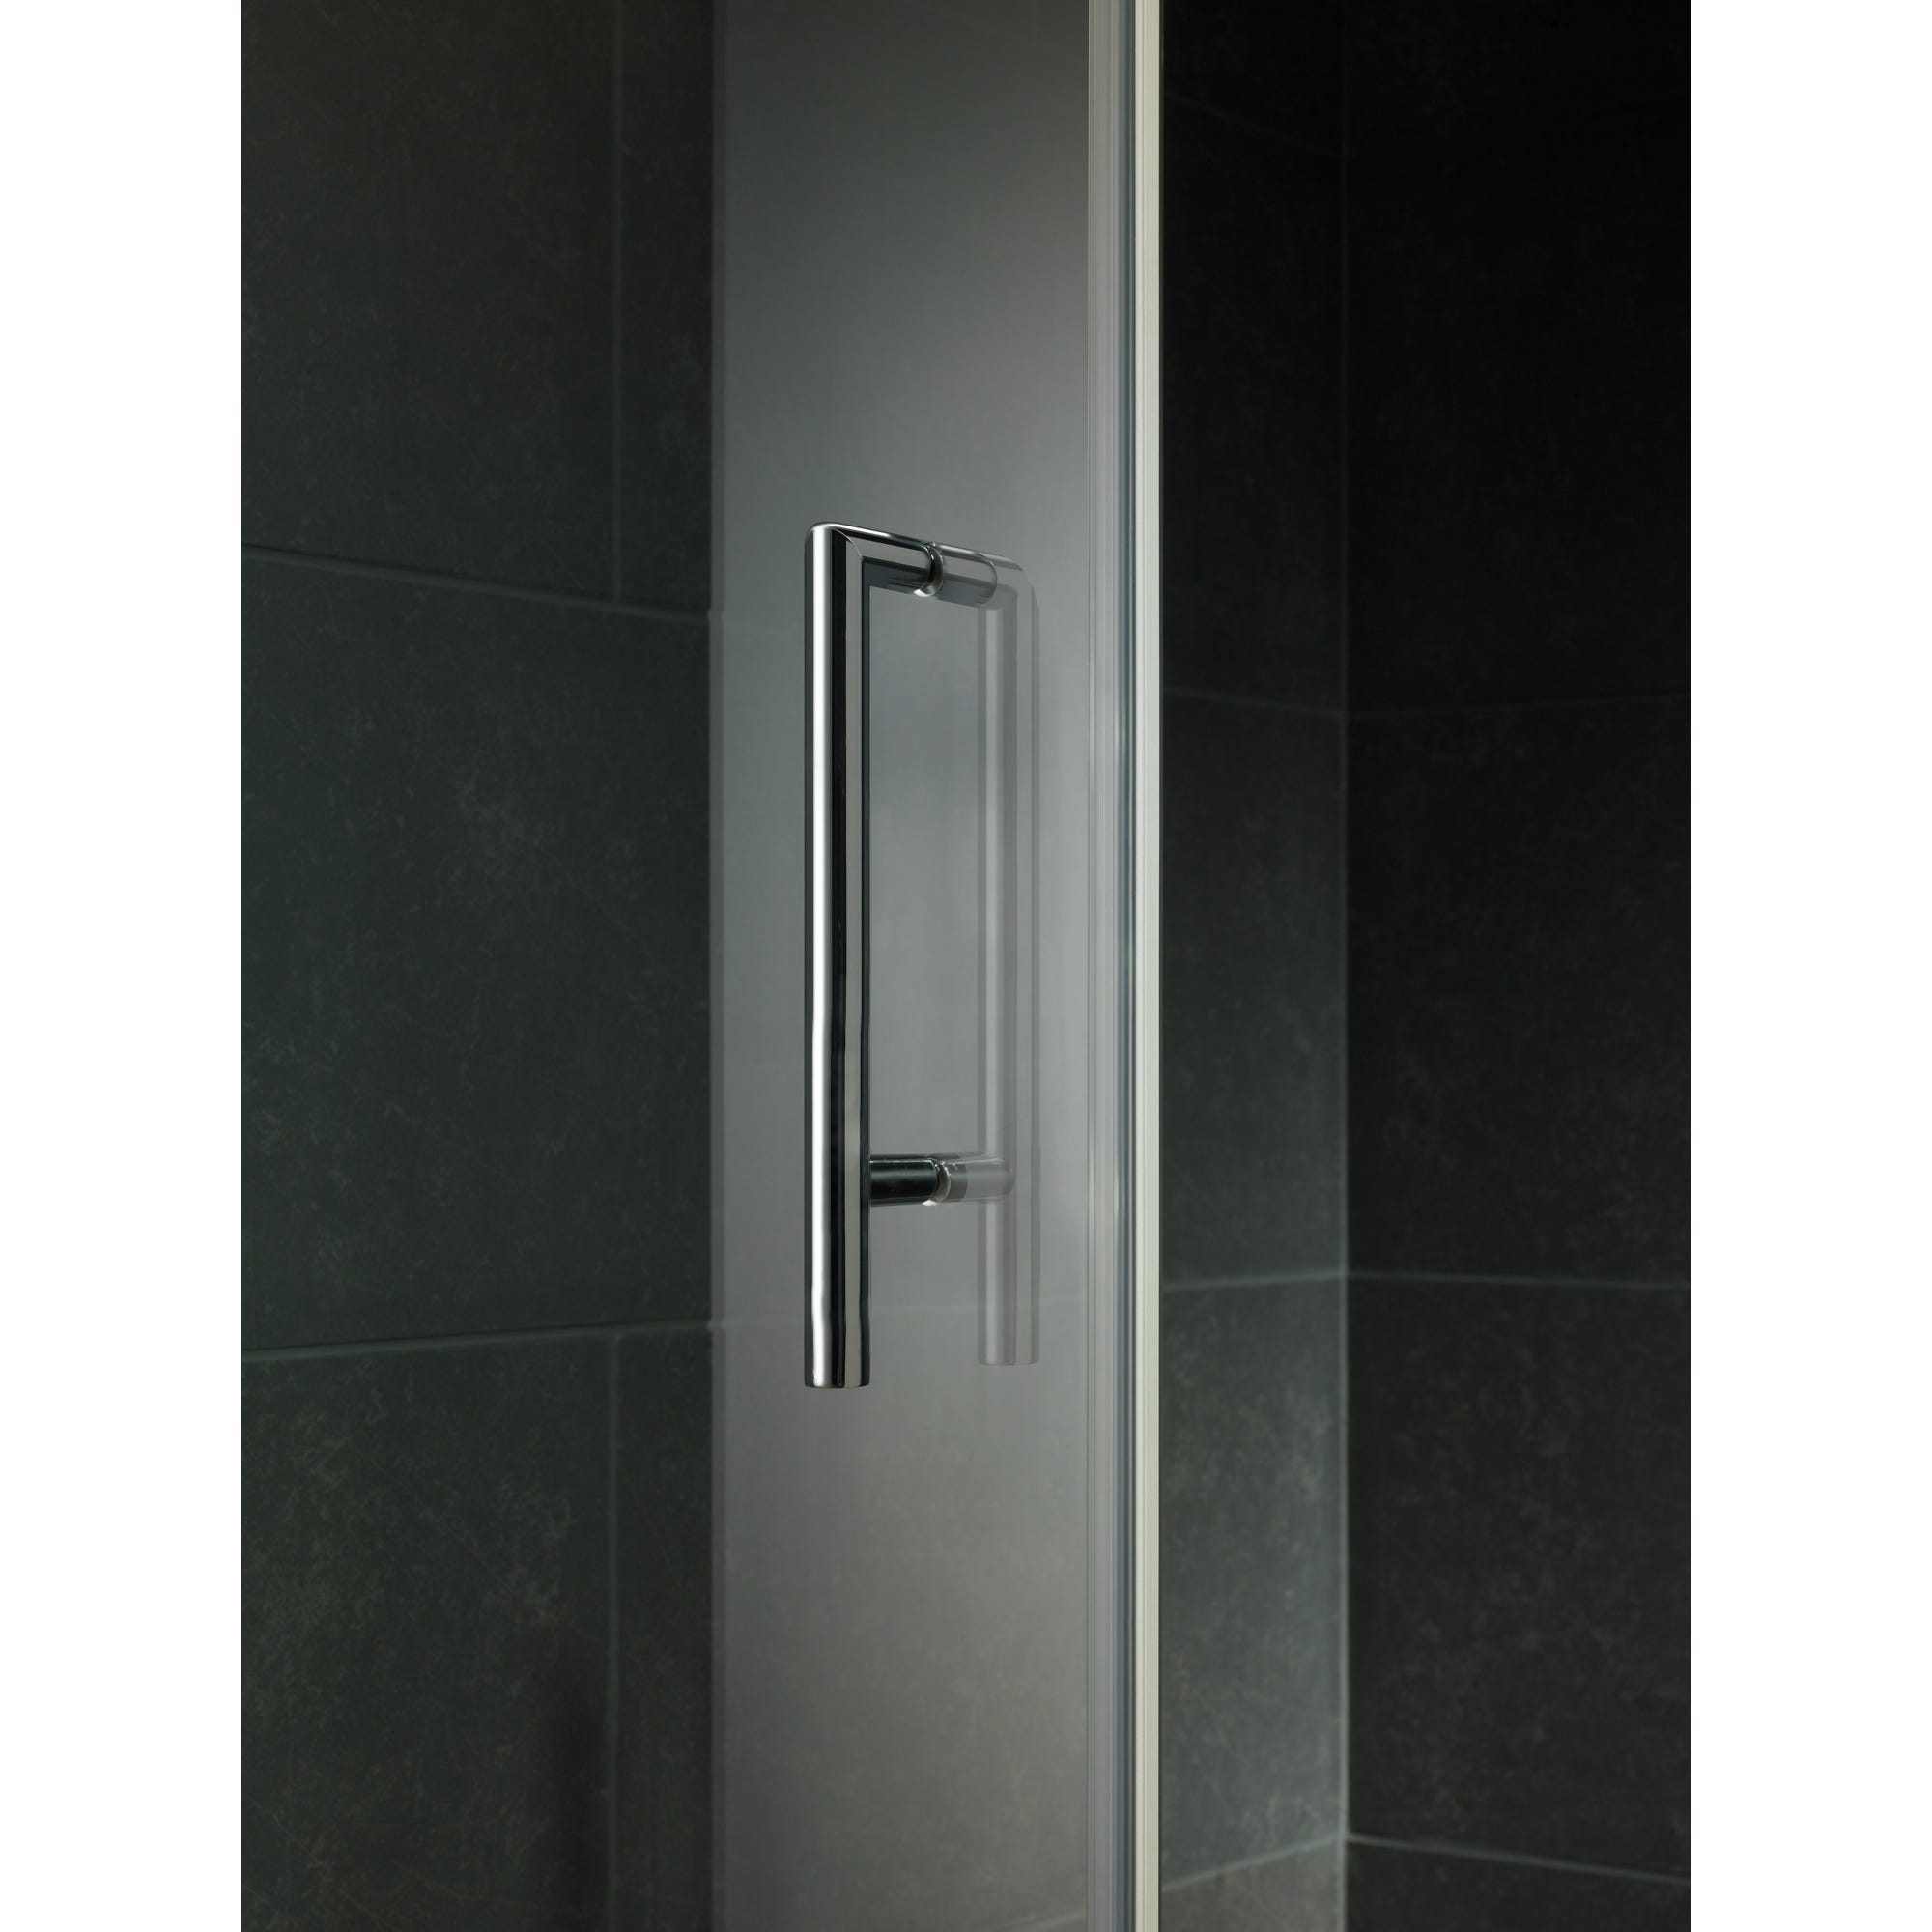 Schulte paroi de douche acces d'angle arrondi 80 x 80 x 185 cm avec portes de douche coulissantes,verre 6 mm, 1/4 cercle, Impériale 1